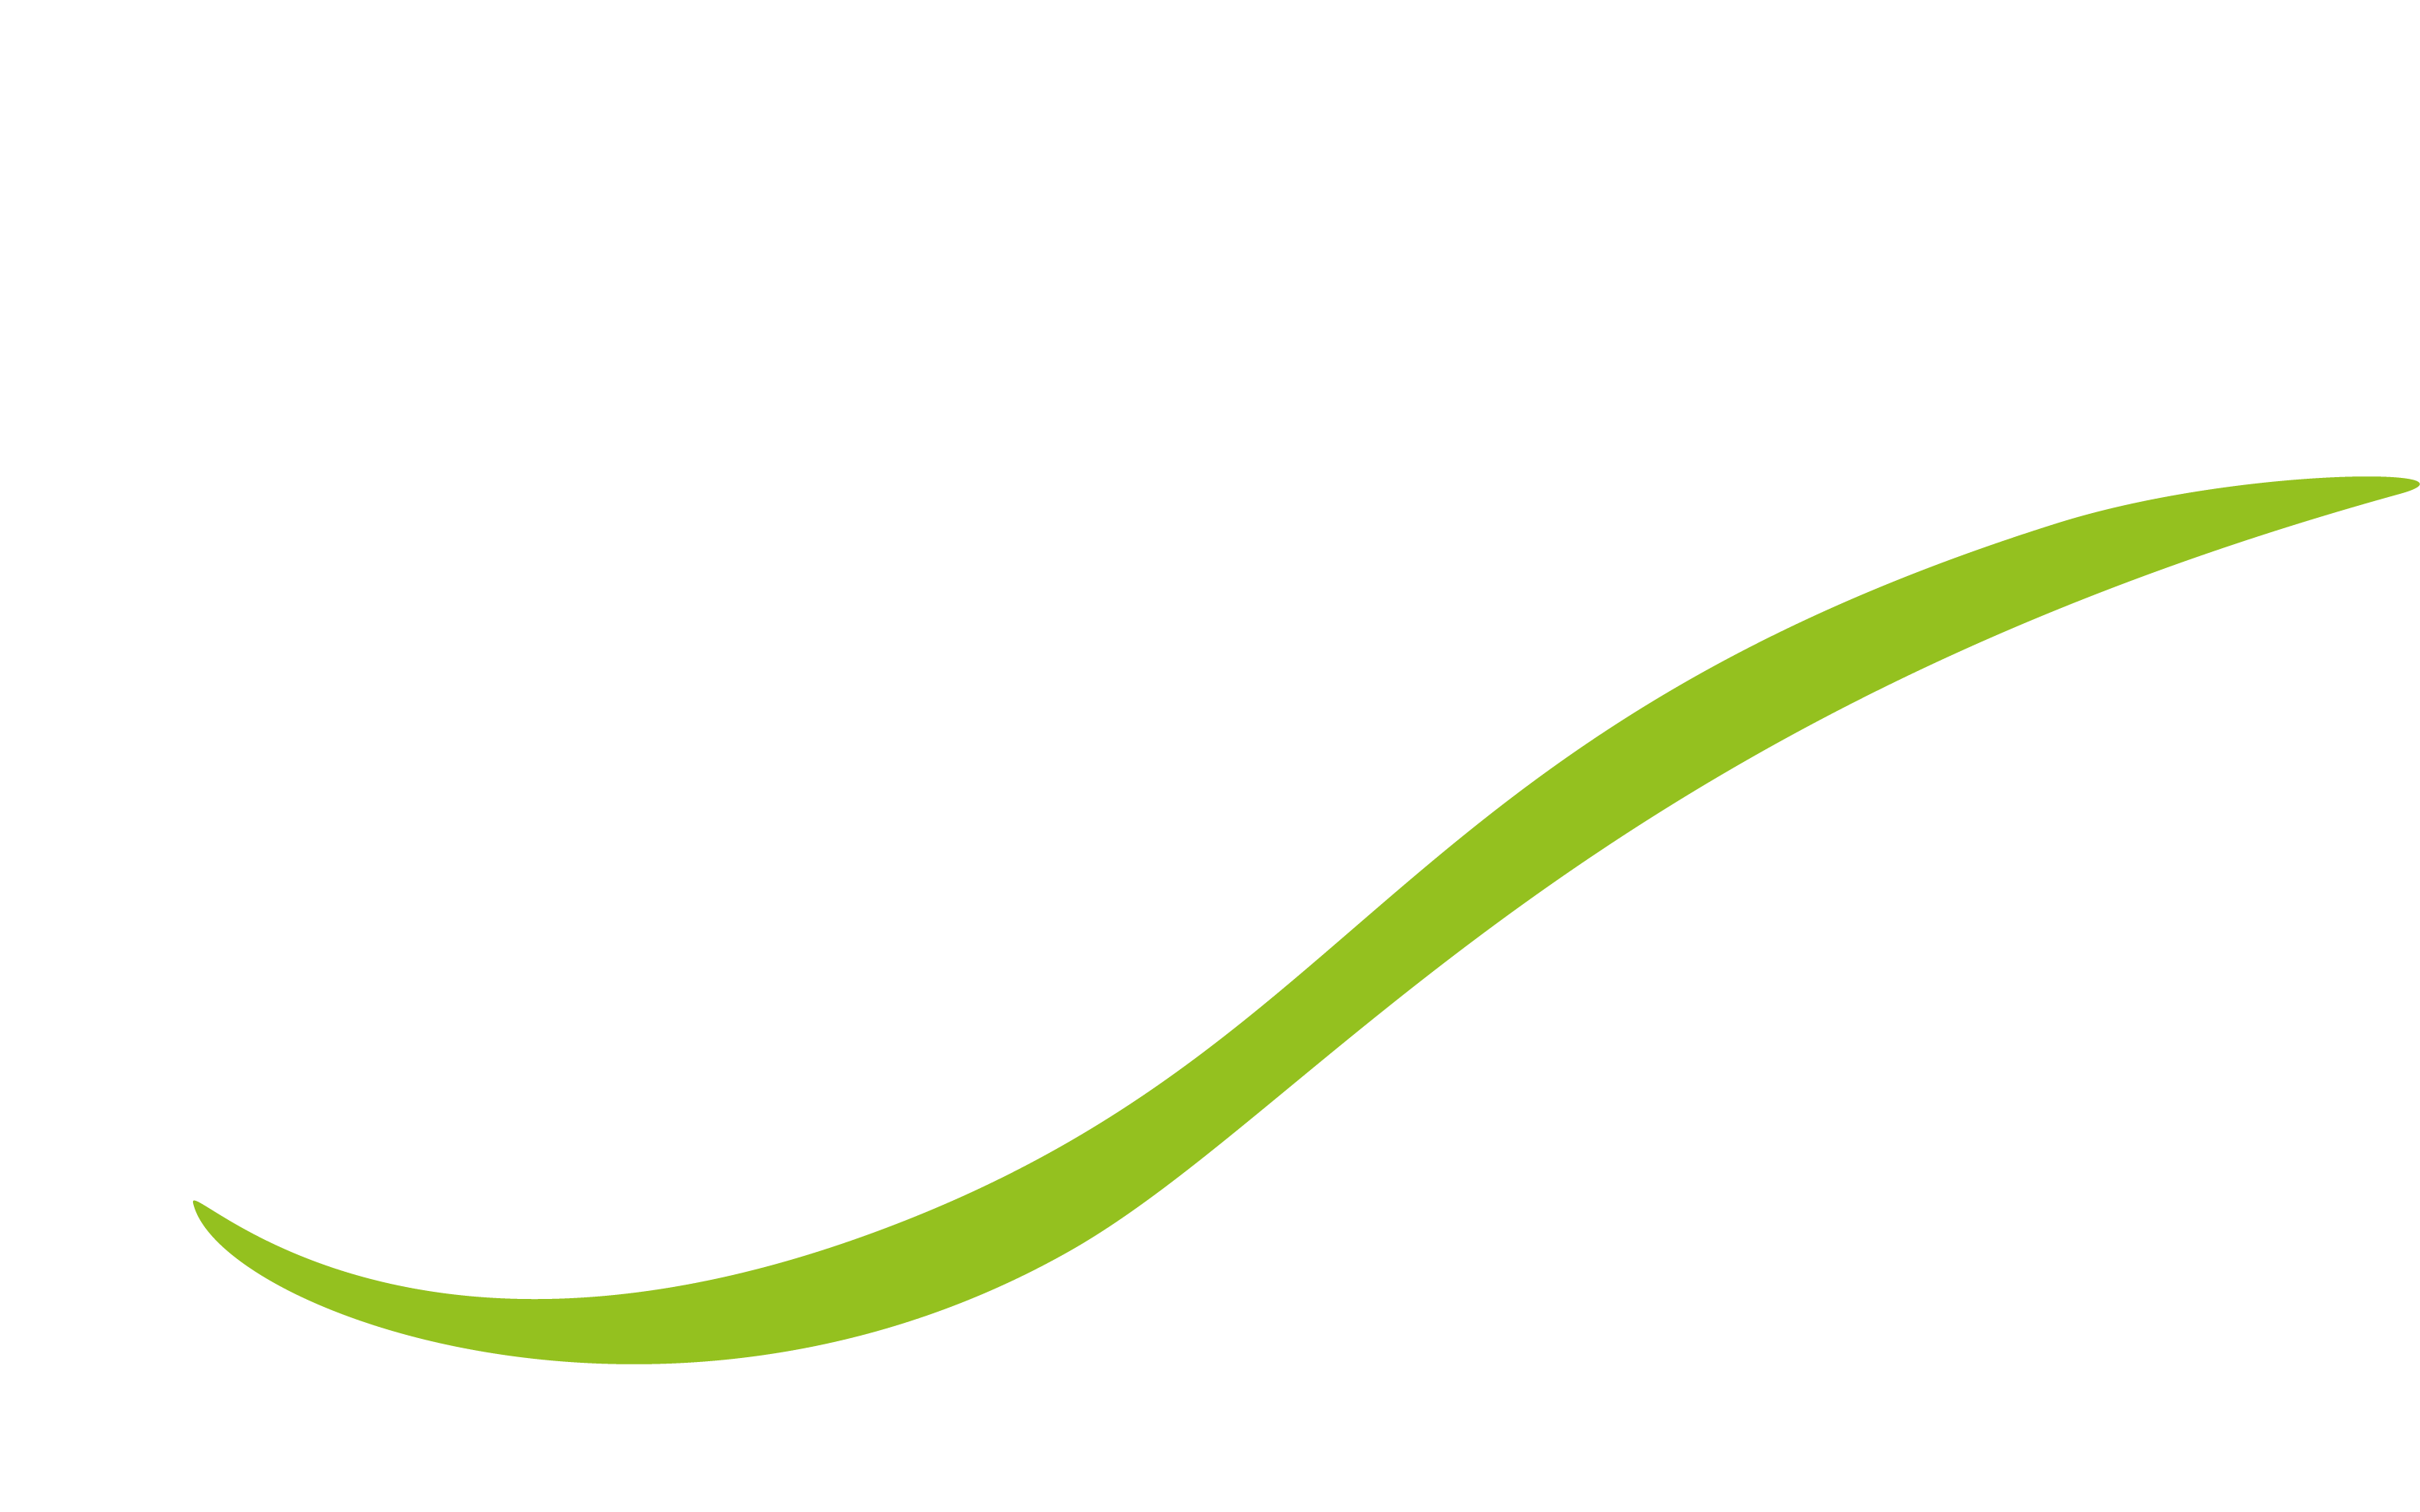 Team Foffteihn